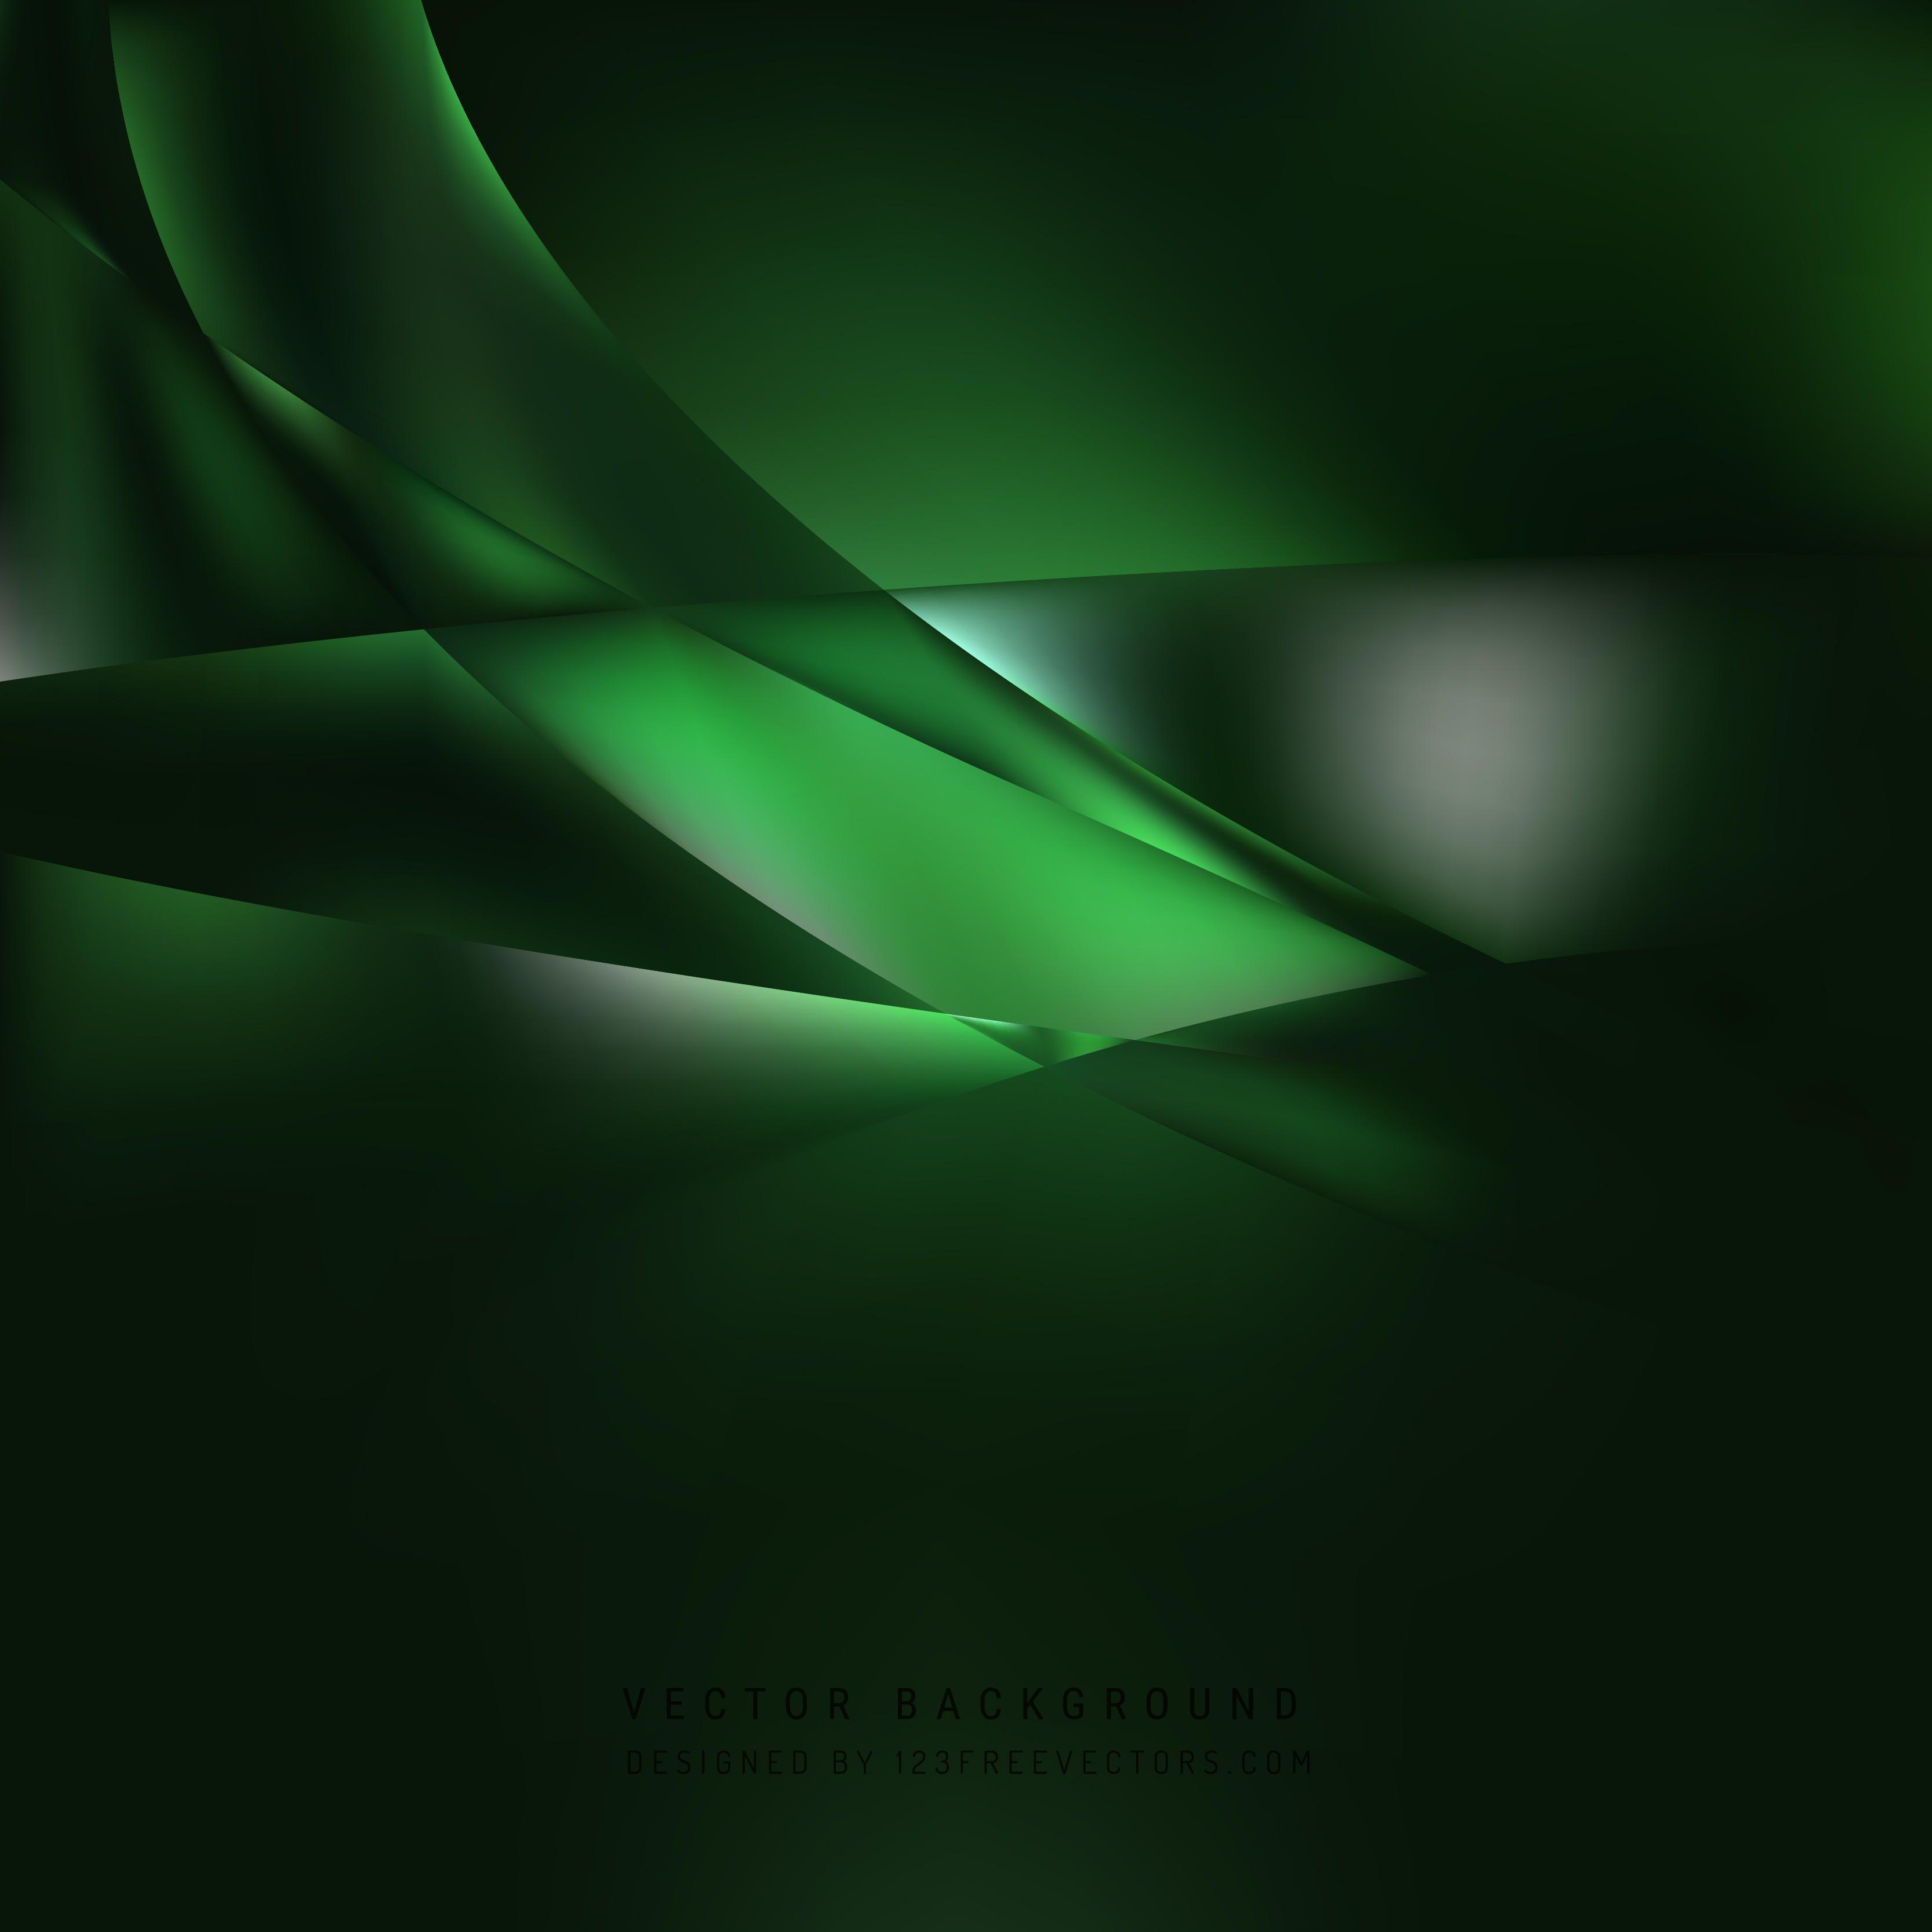 Dark Green Background Vectors. Download Free Vector Art